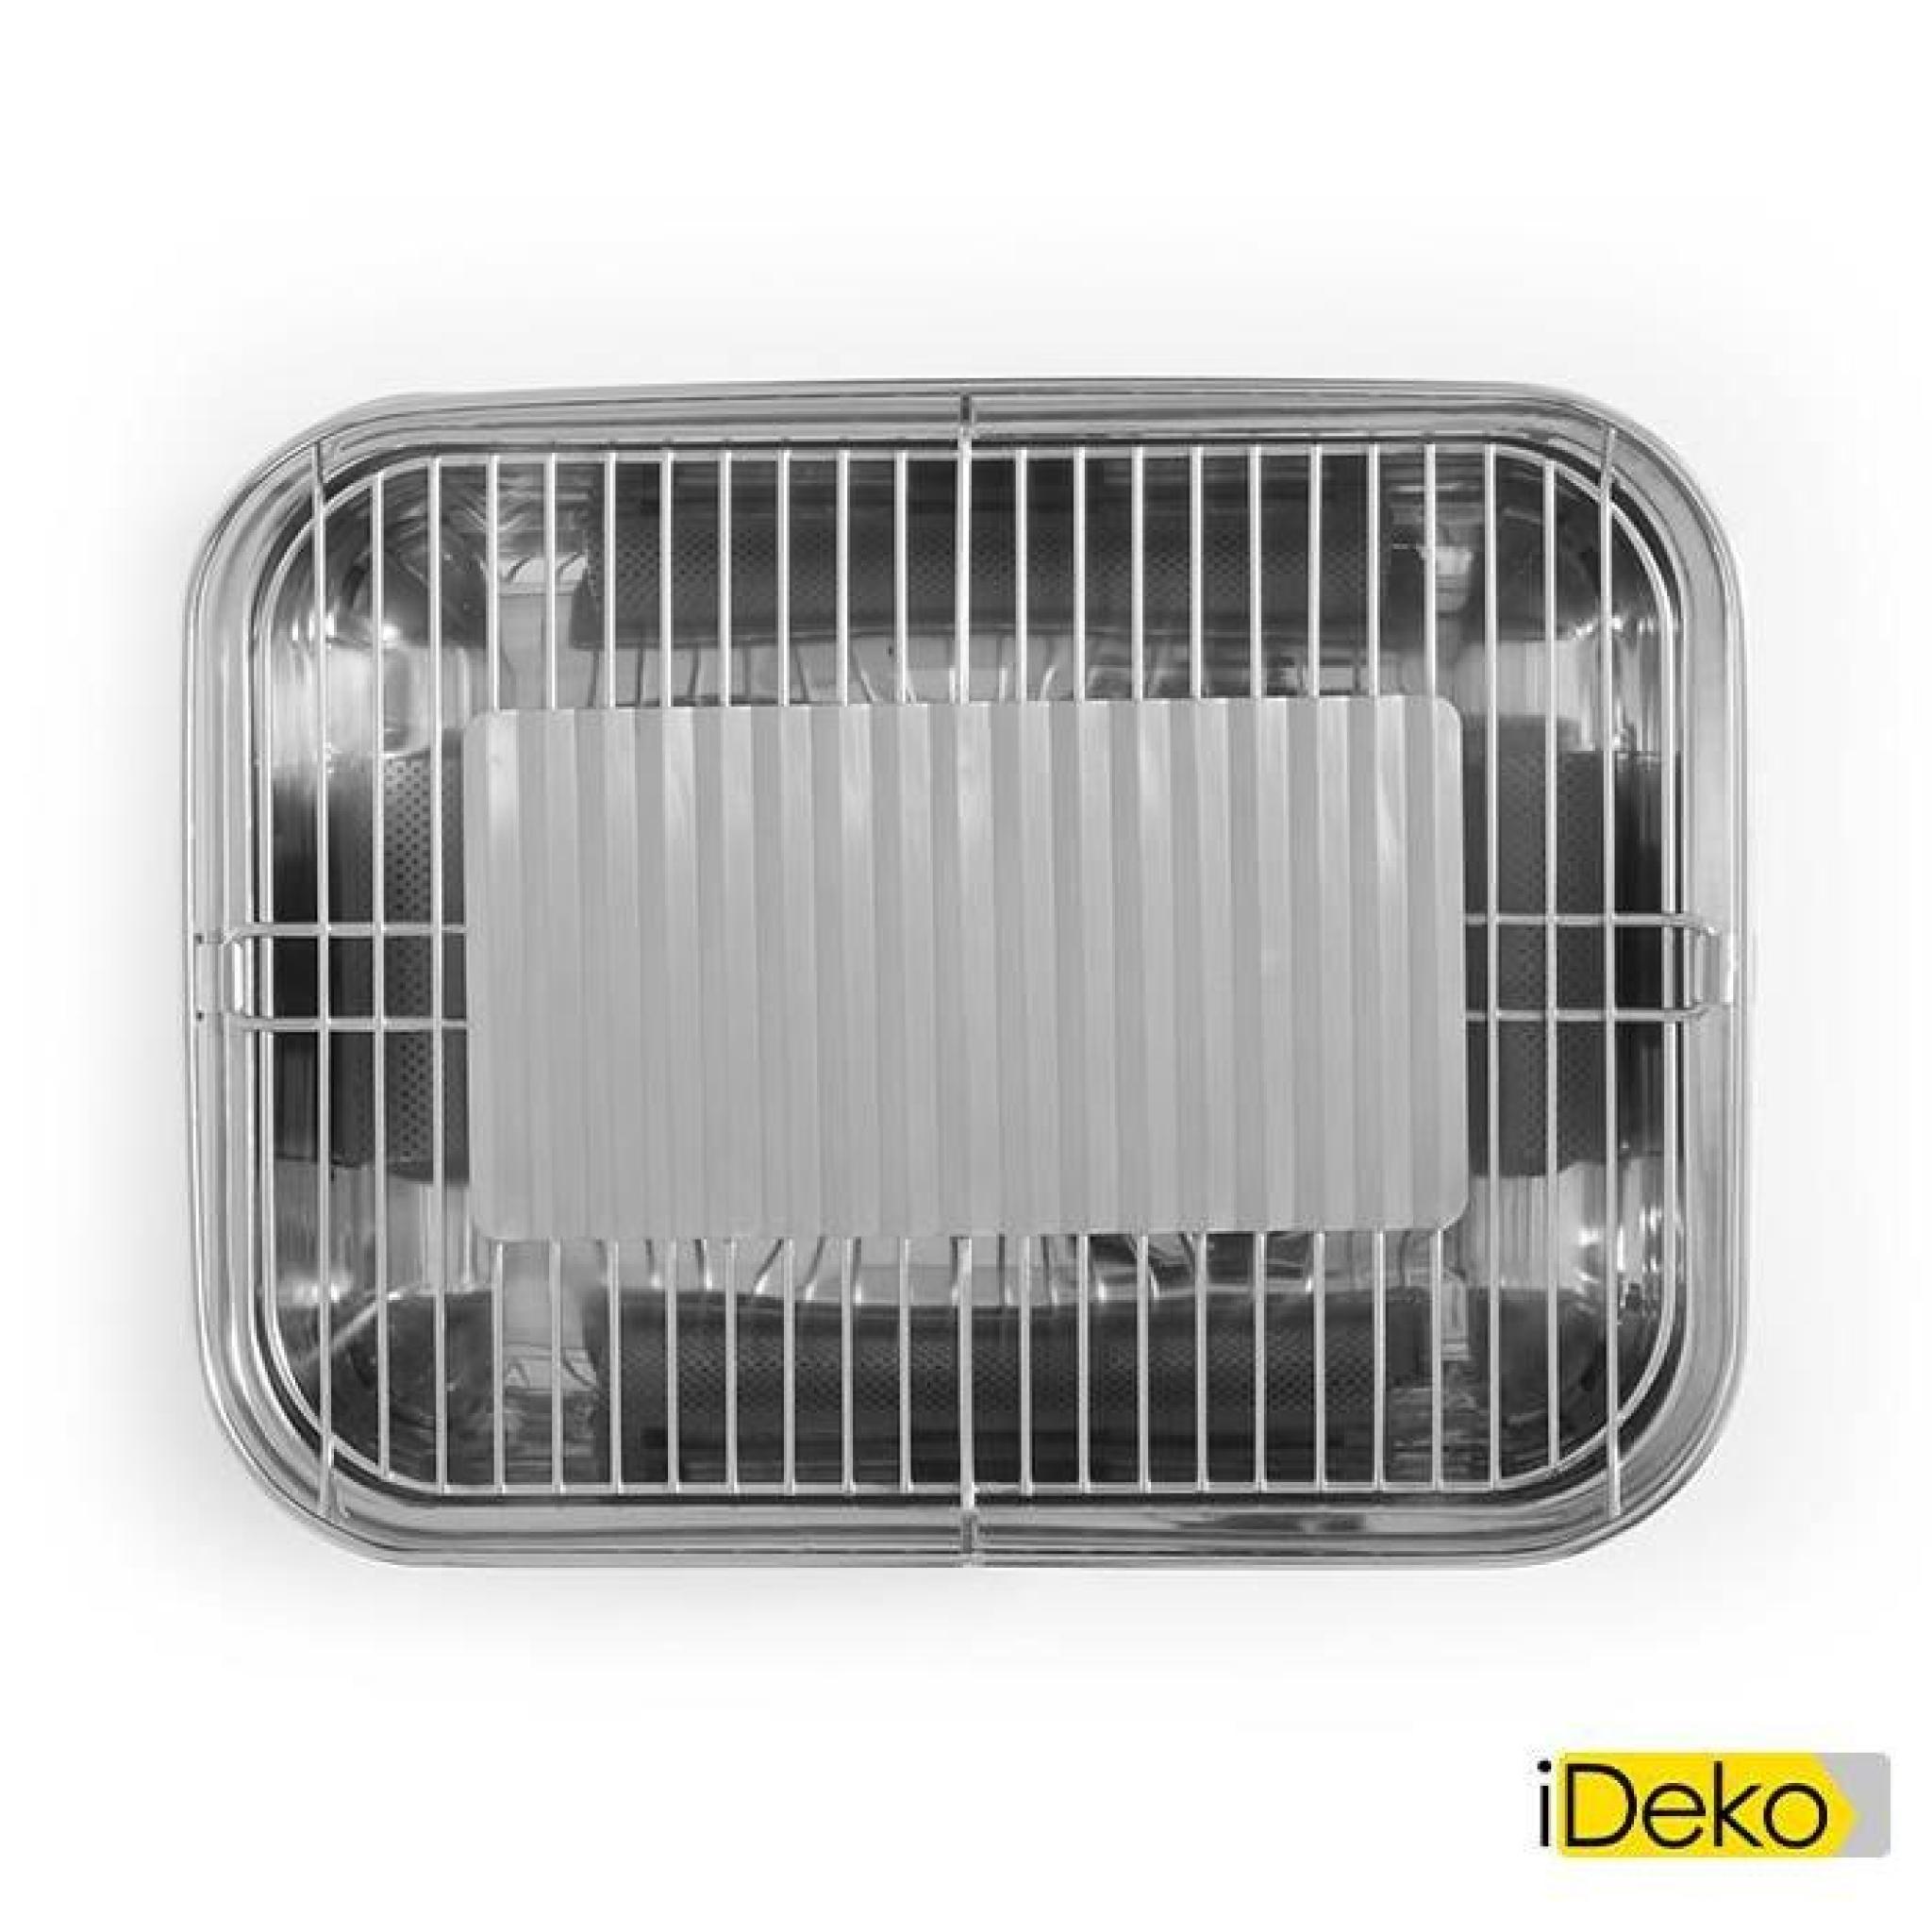 iDeko®Barbecue de table électrique en inox 6 personnes 43,5x33,5x23,5cm  pas cher